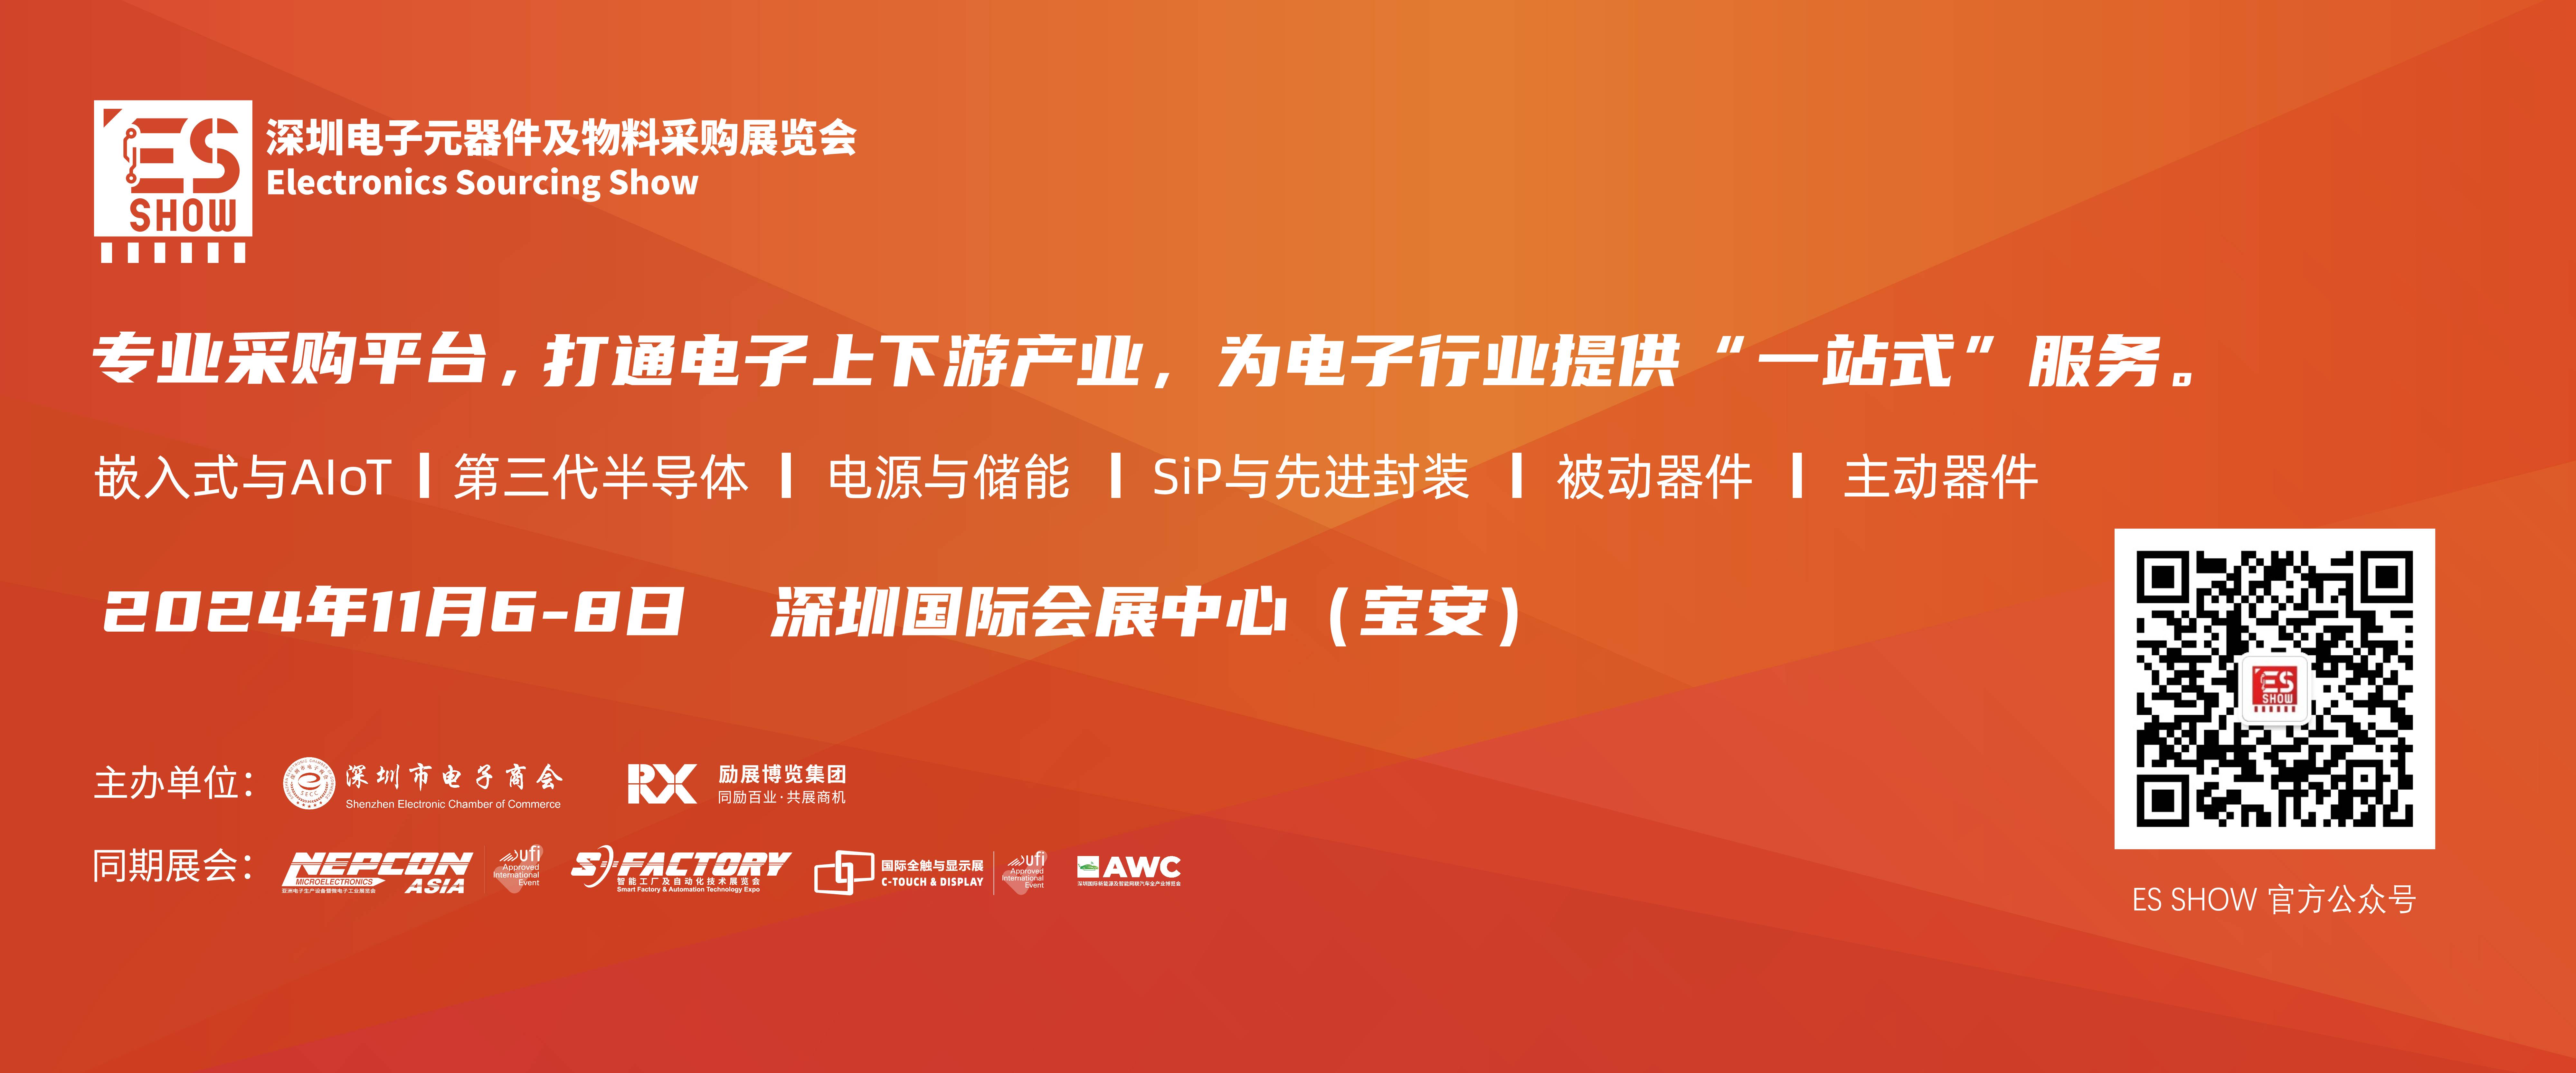 深圳电子展 华南电子展 芯片制造 光学 中国电子展